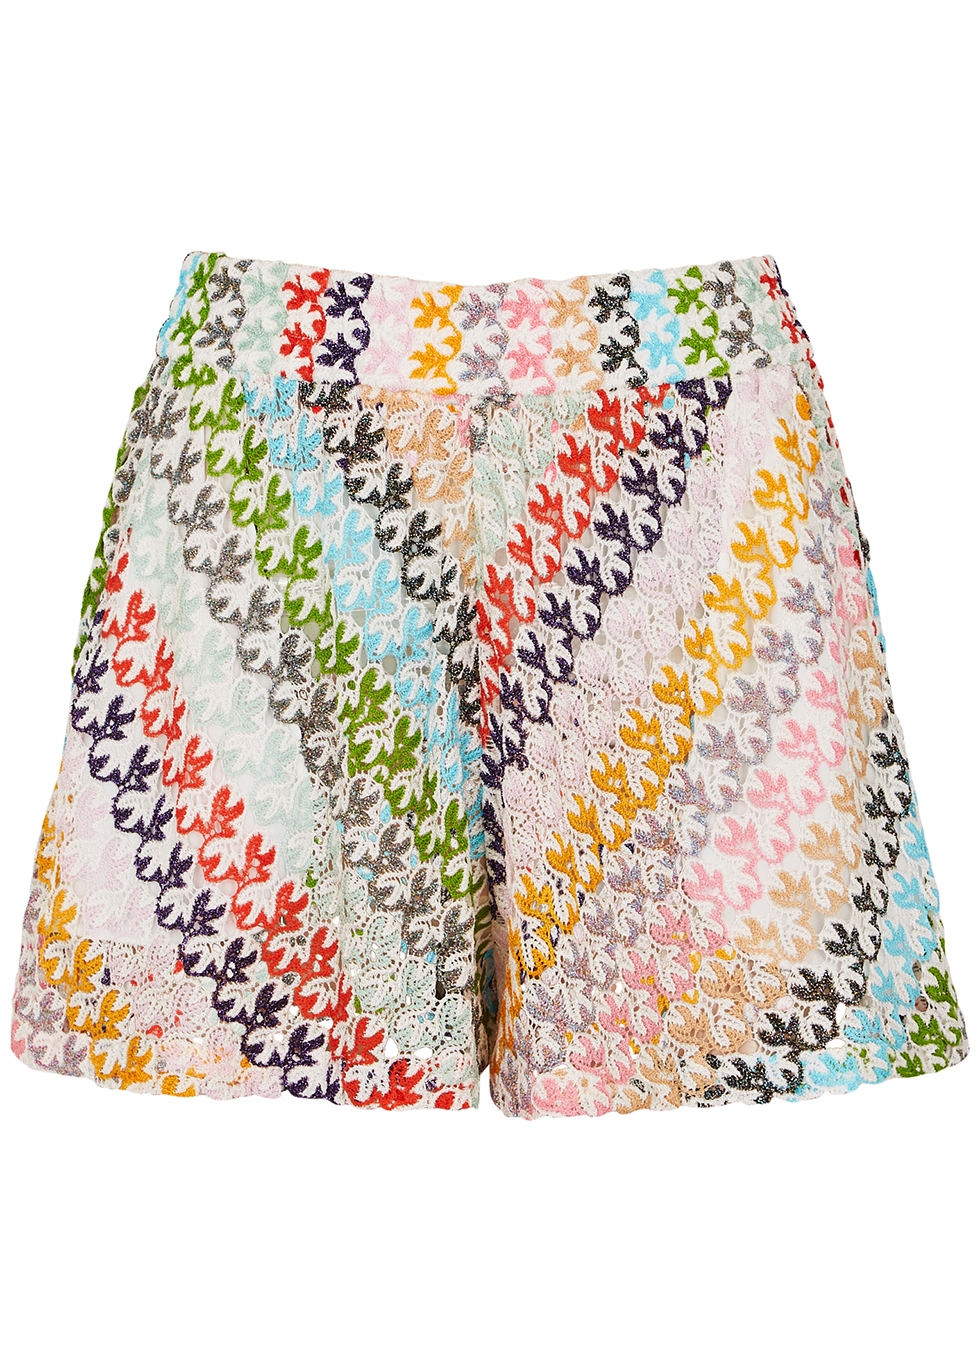 Patterned open-knit shorts